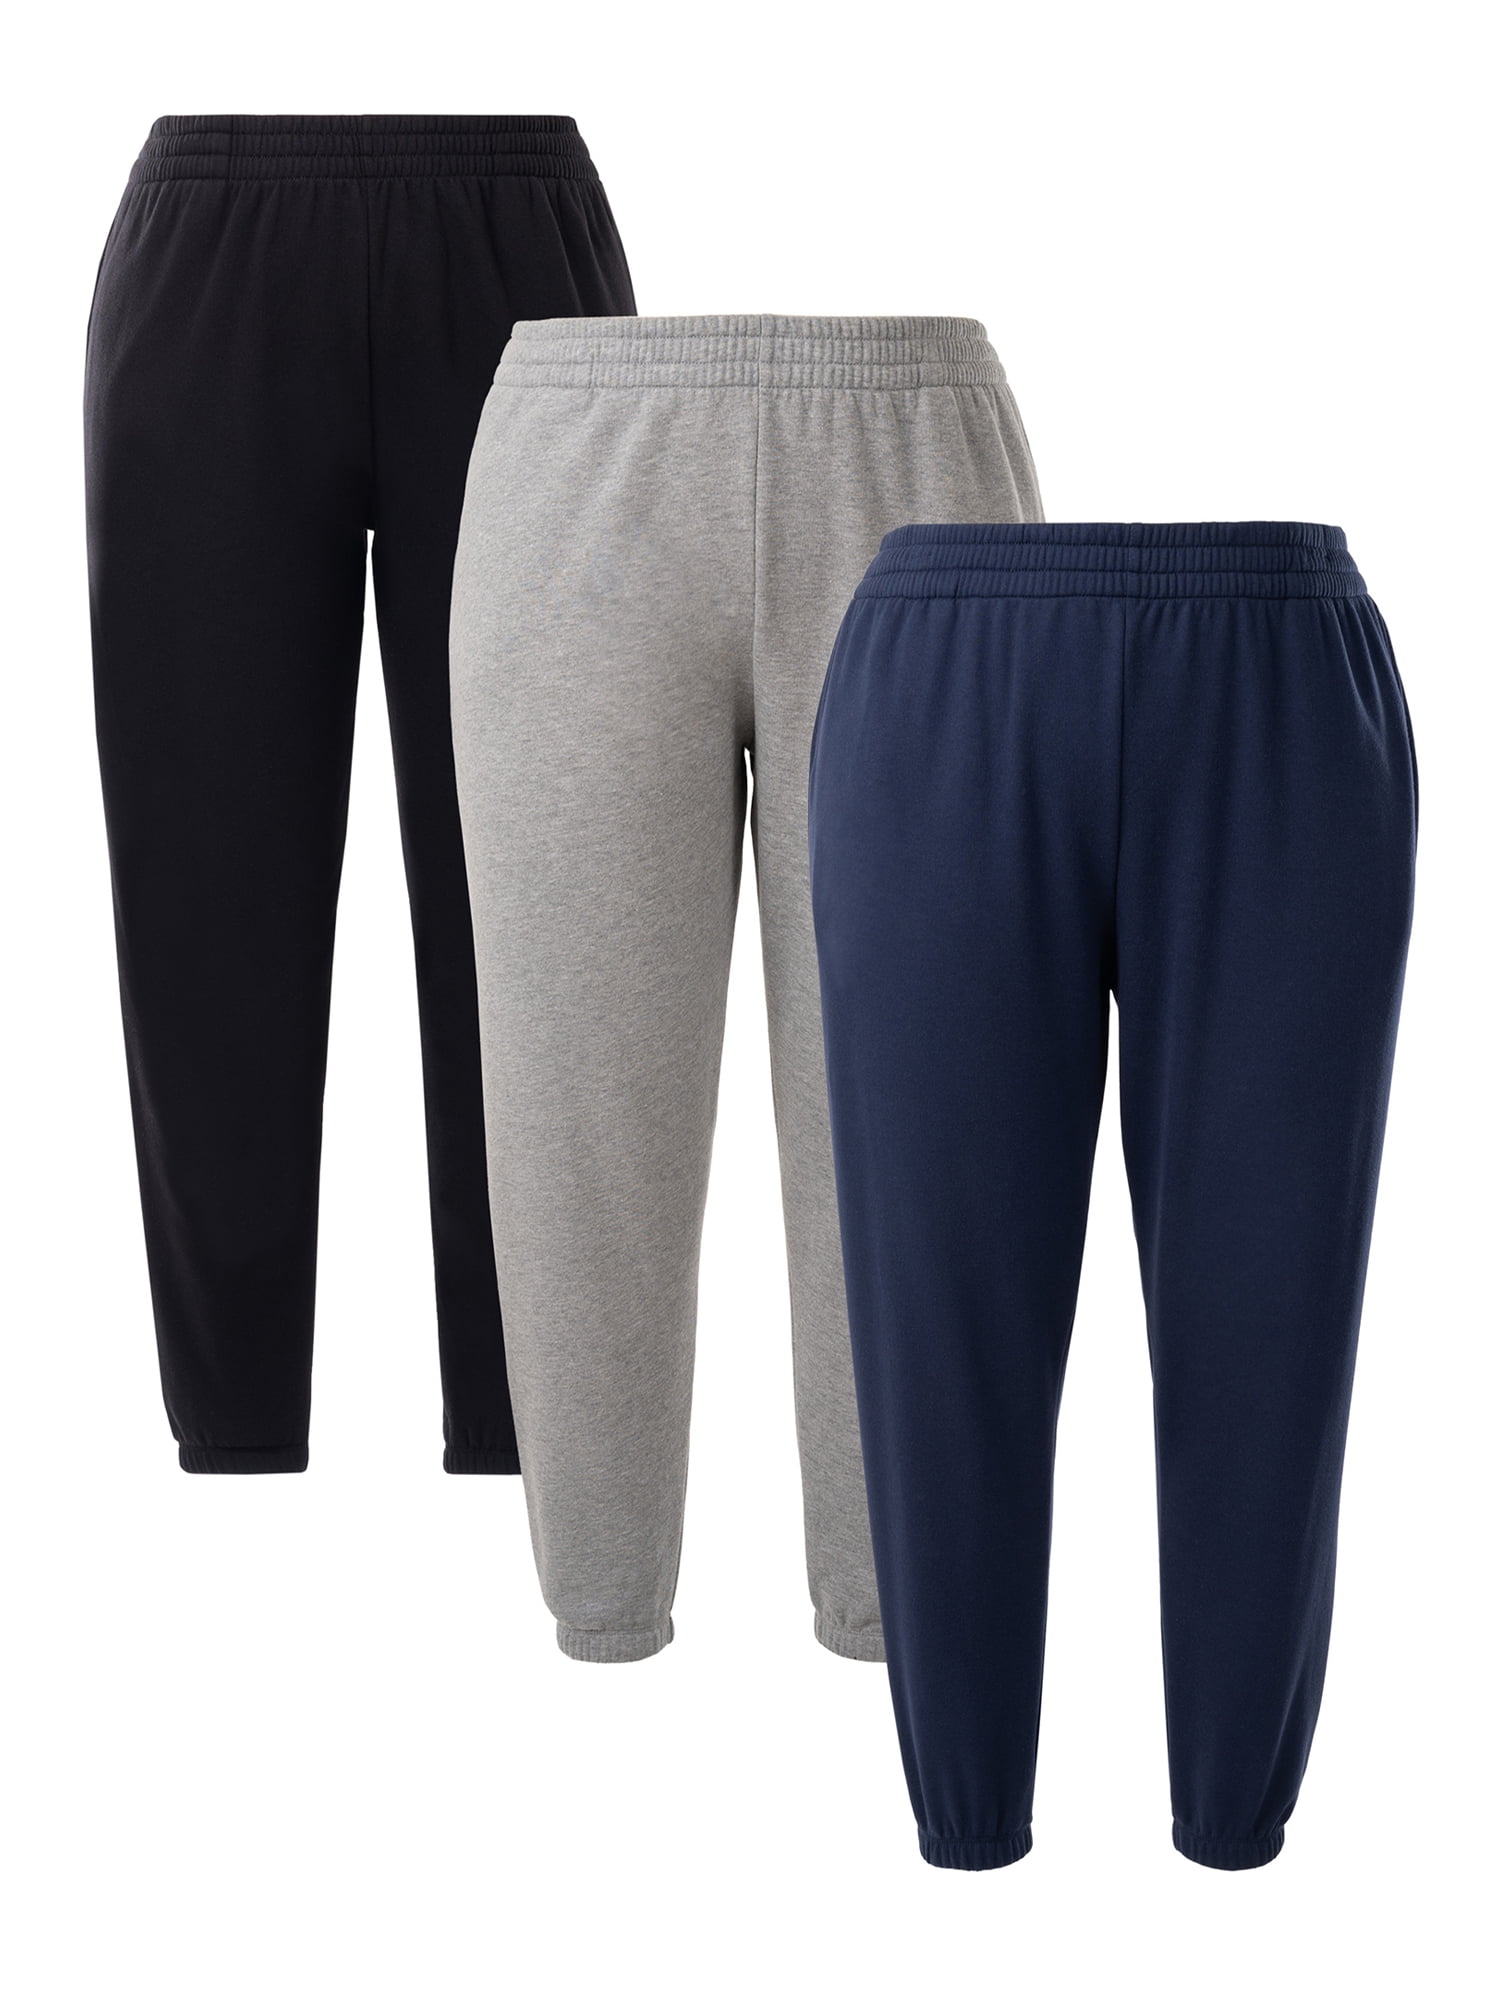 Terra & Sky Women's Plus Size Pull On Waffle Knit Cargo Pants, 27